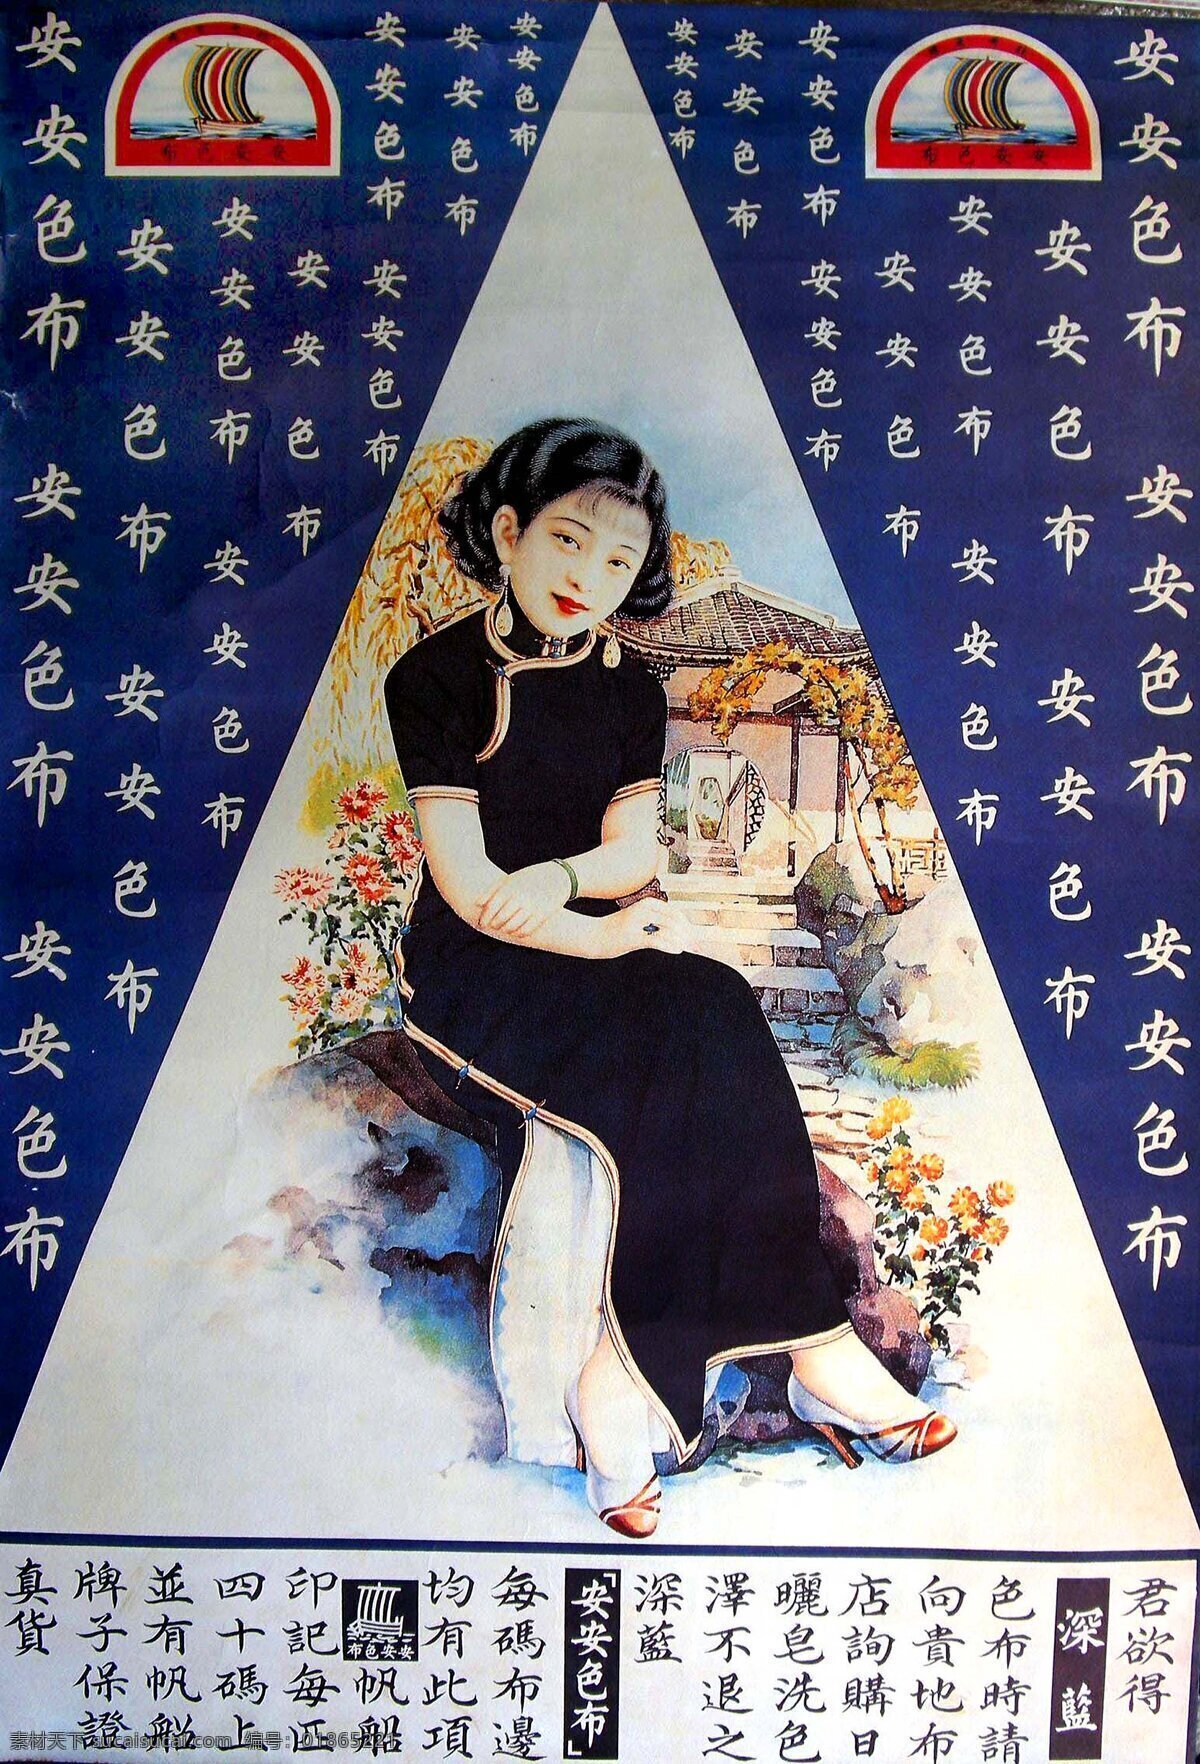 女子 民国女子 旗袍女子 布 织布 布匹广告 美女 月份牌 老上海 老上海广告 广告画 传统广告 民国广告 手绘广告 中国画 传统画 工笔画 插画 白描 中式白描 绘画图文 文化艺术